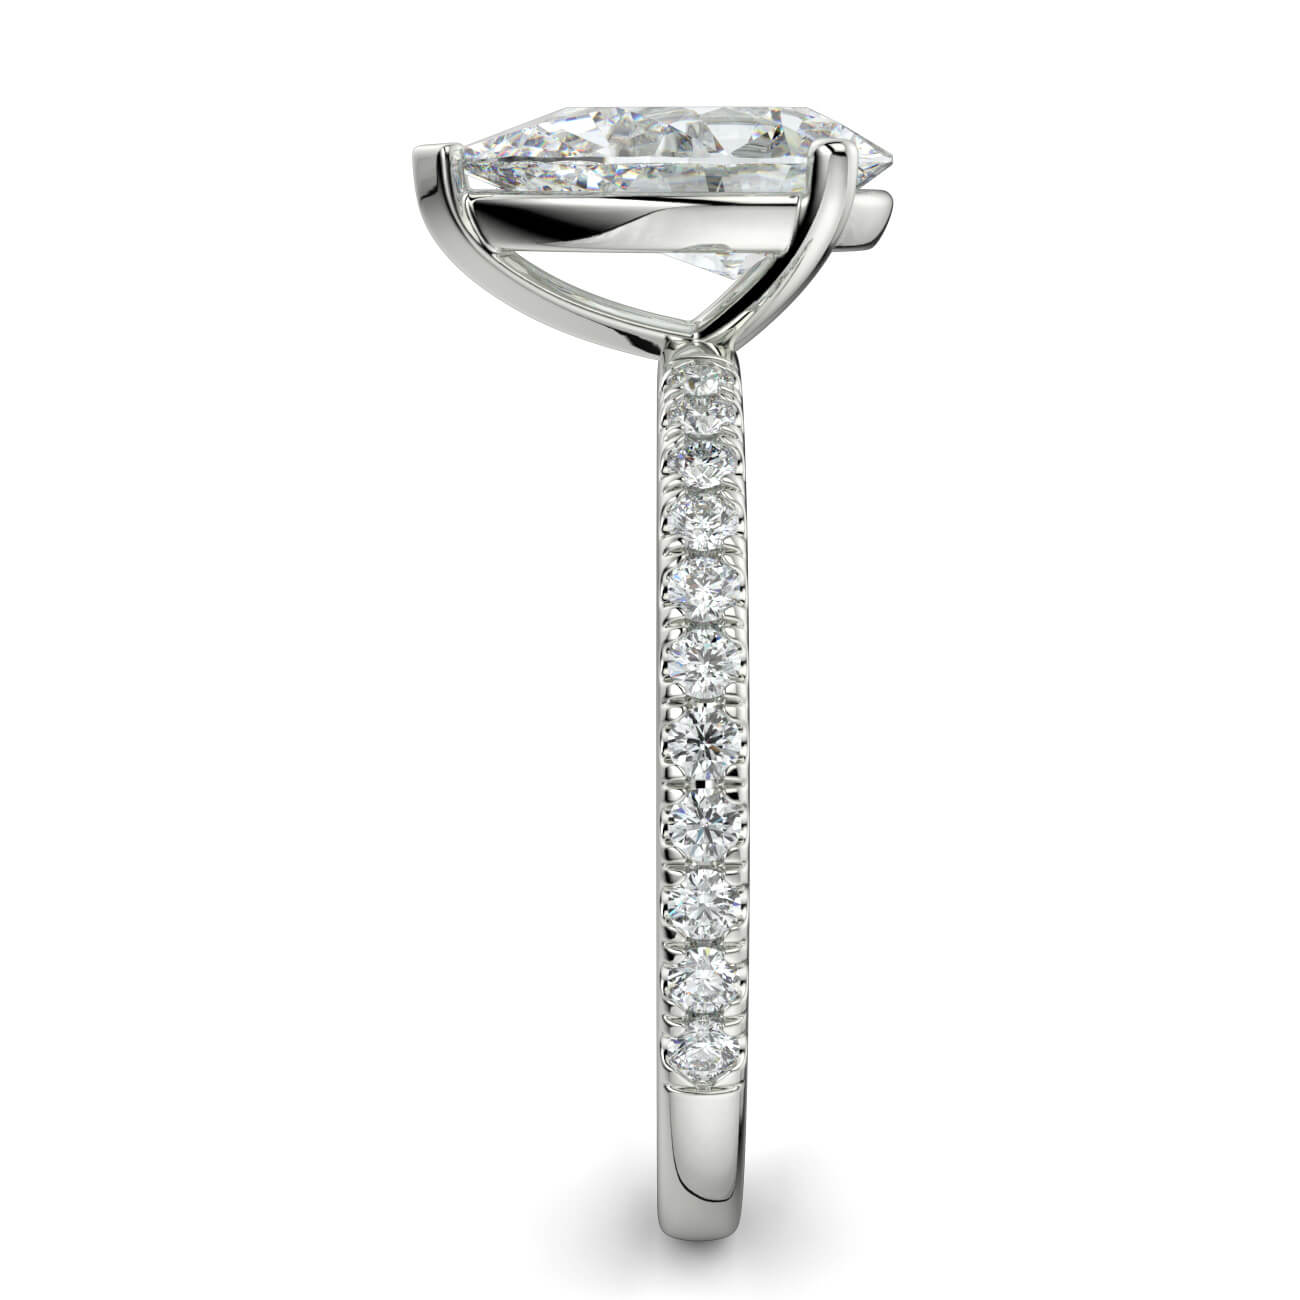 Classic Pear Shape Pavé Diamond Engagement Ring in 18k White Gold – Australian Diamond Network